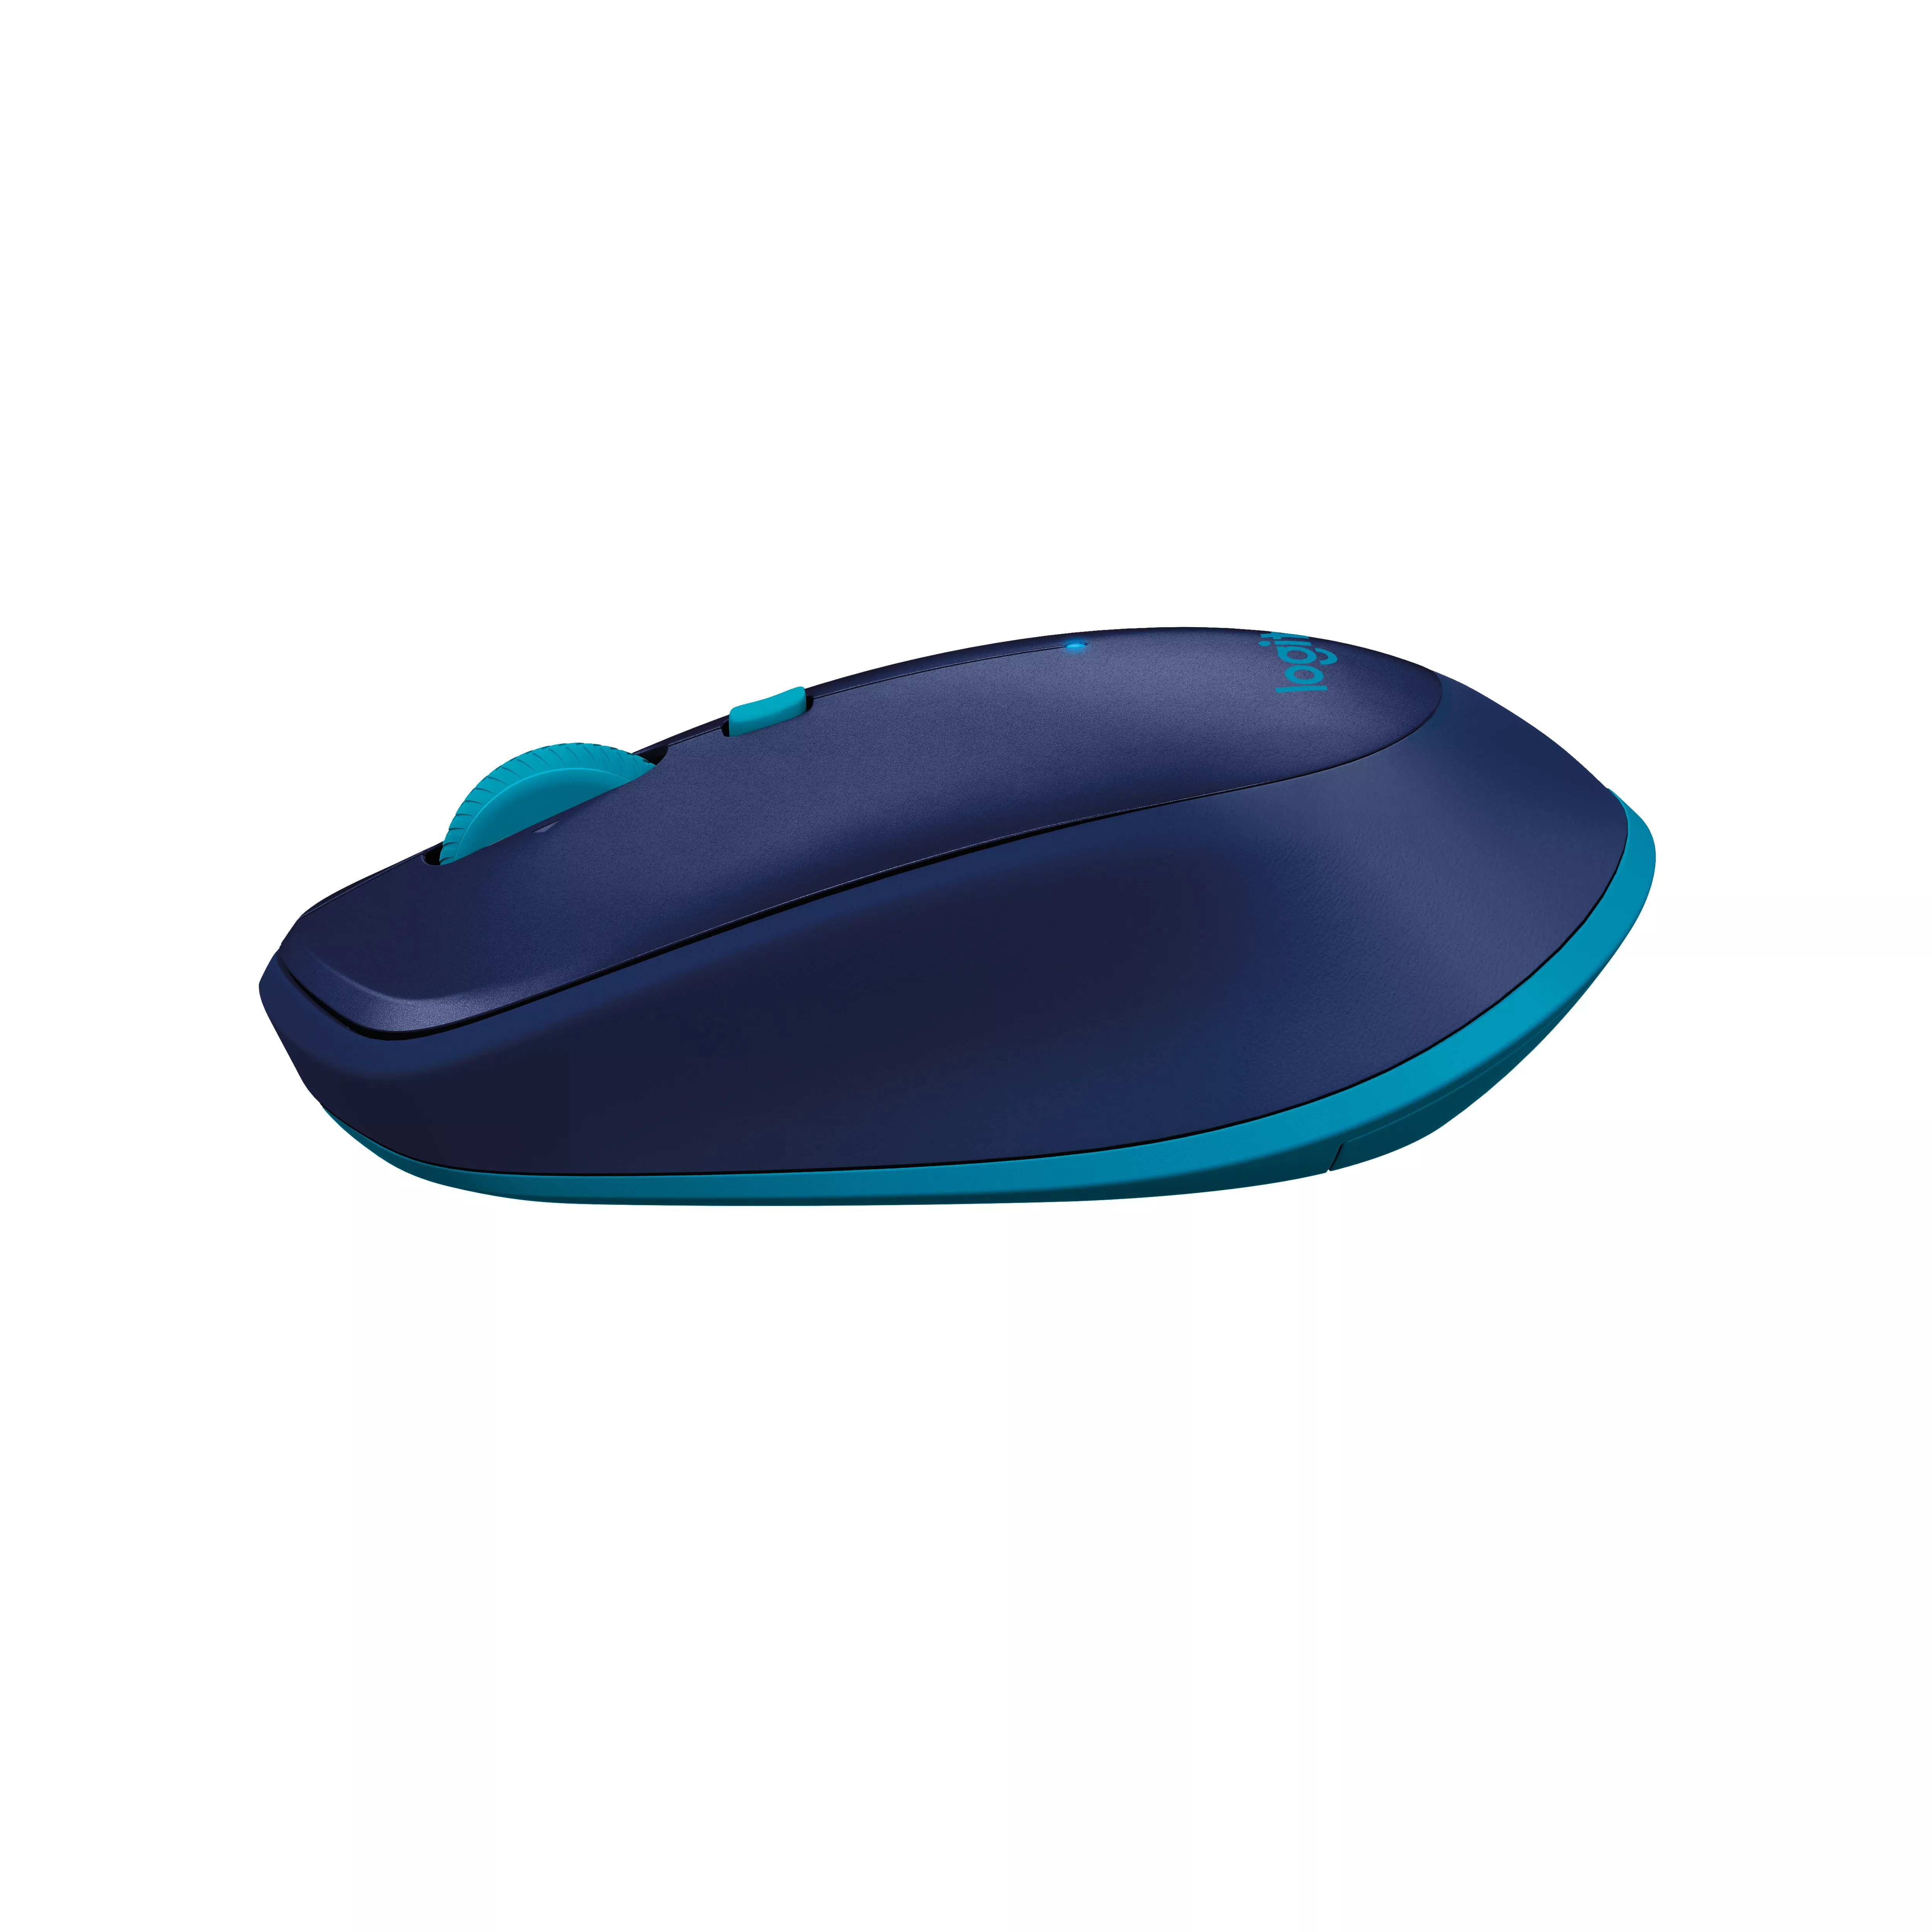 Vente Logitech M535 Bluetooth Mouse Logitech au meilleur prix - visuel 6